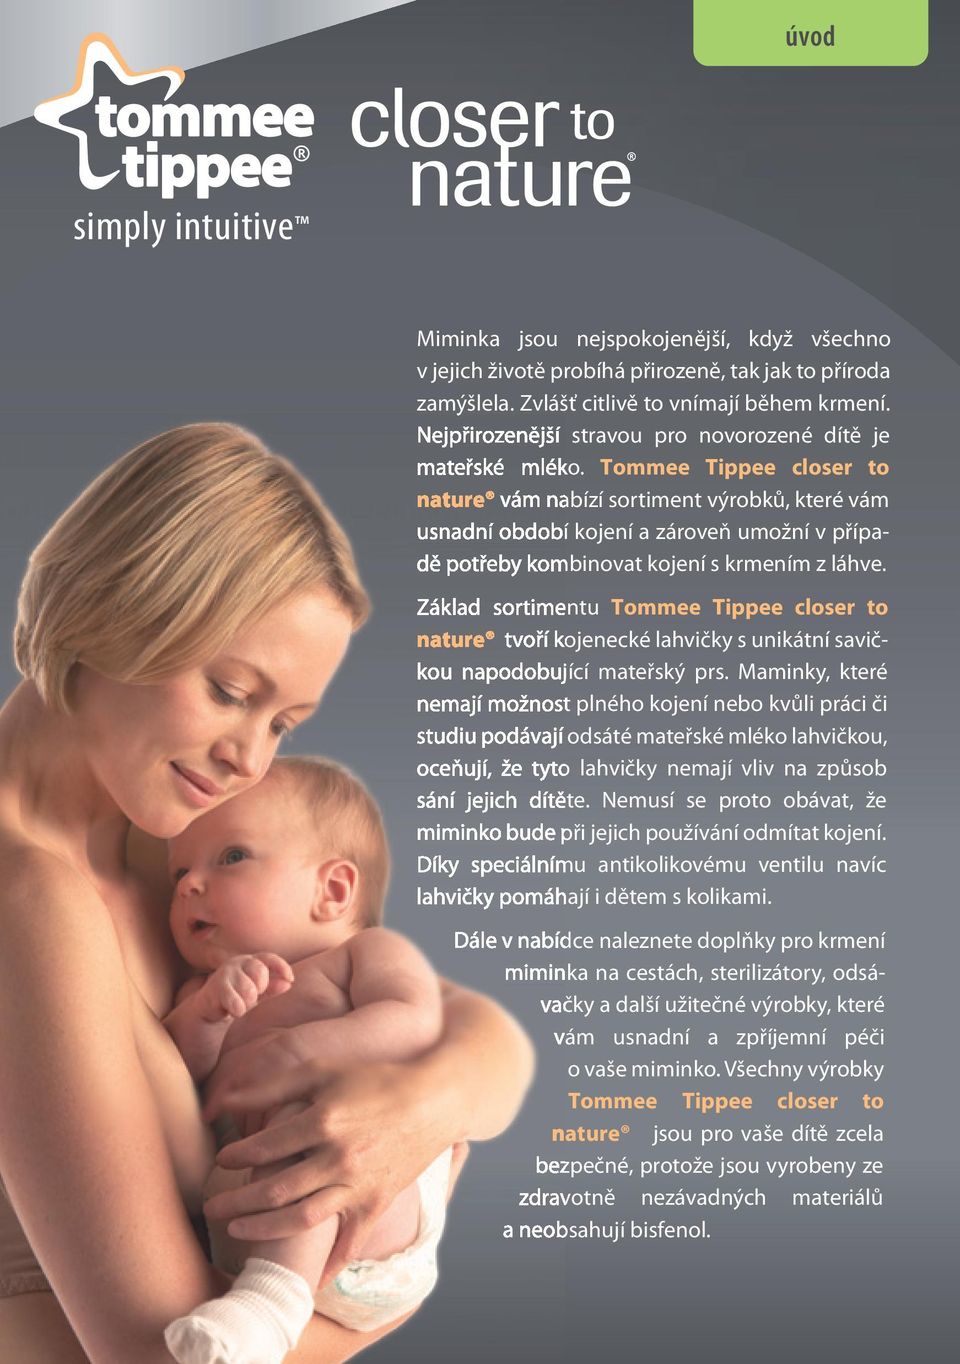 Tommee Tippee closer to nature vám nabízí sortiment výrobků, které vám usnadní období kojení a zároveň umožní v případě potřeby kombinovat kojení s krmením z láhve.